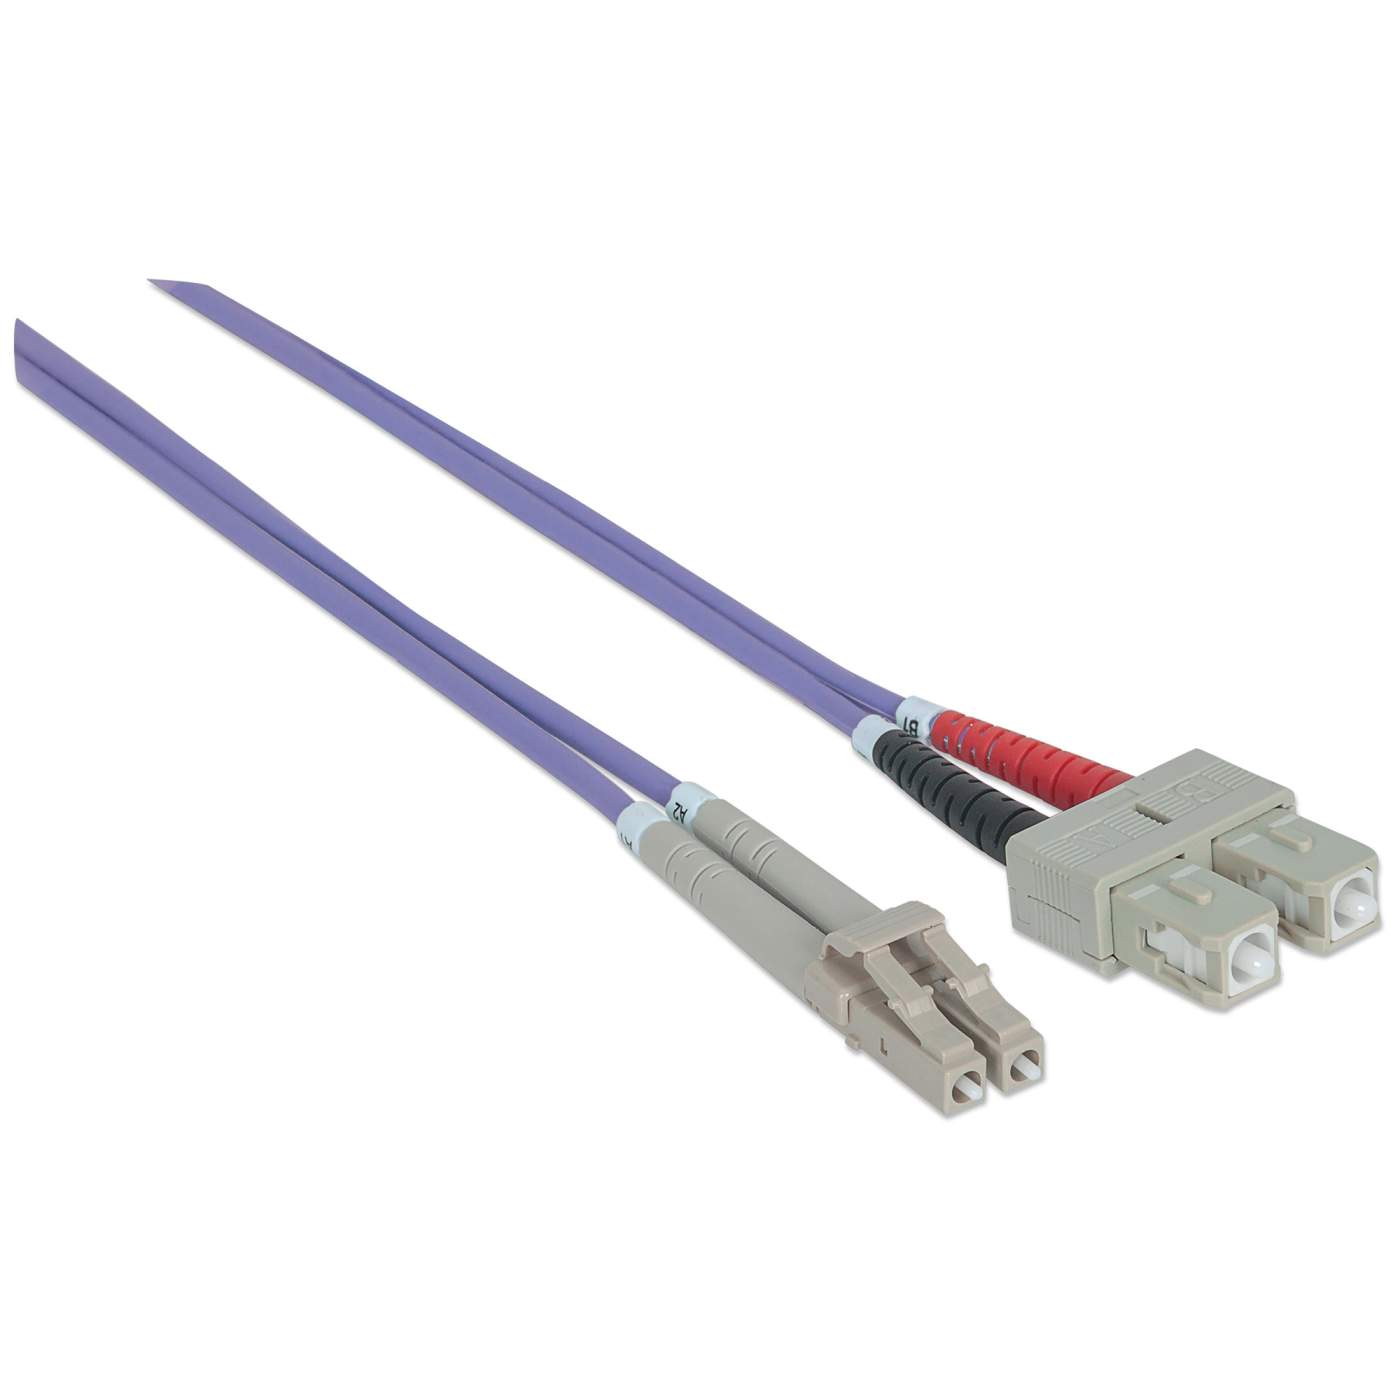 3 m LC to SC UPC Fiber Optic Patch Cable, 3.0 mm, Duplex, LSZH, OM4  Multimode, Violet